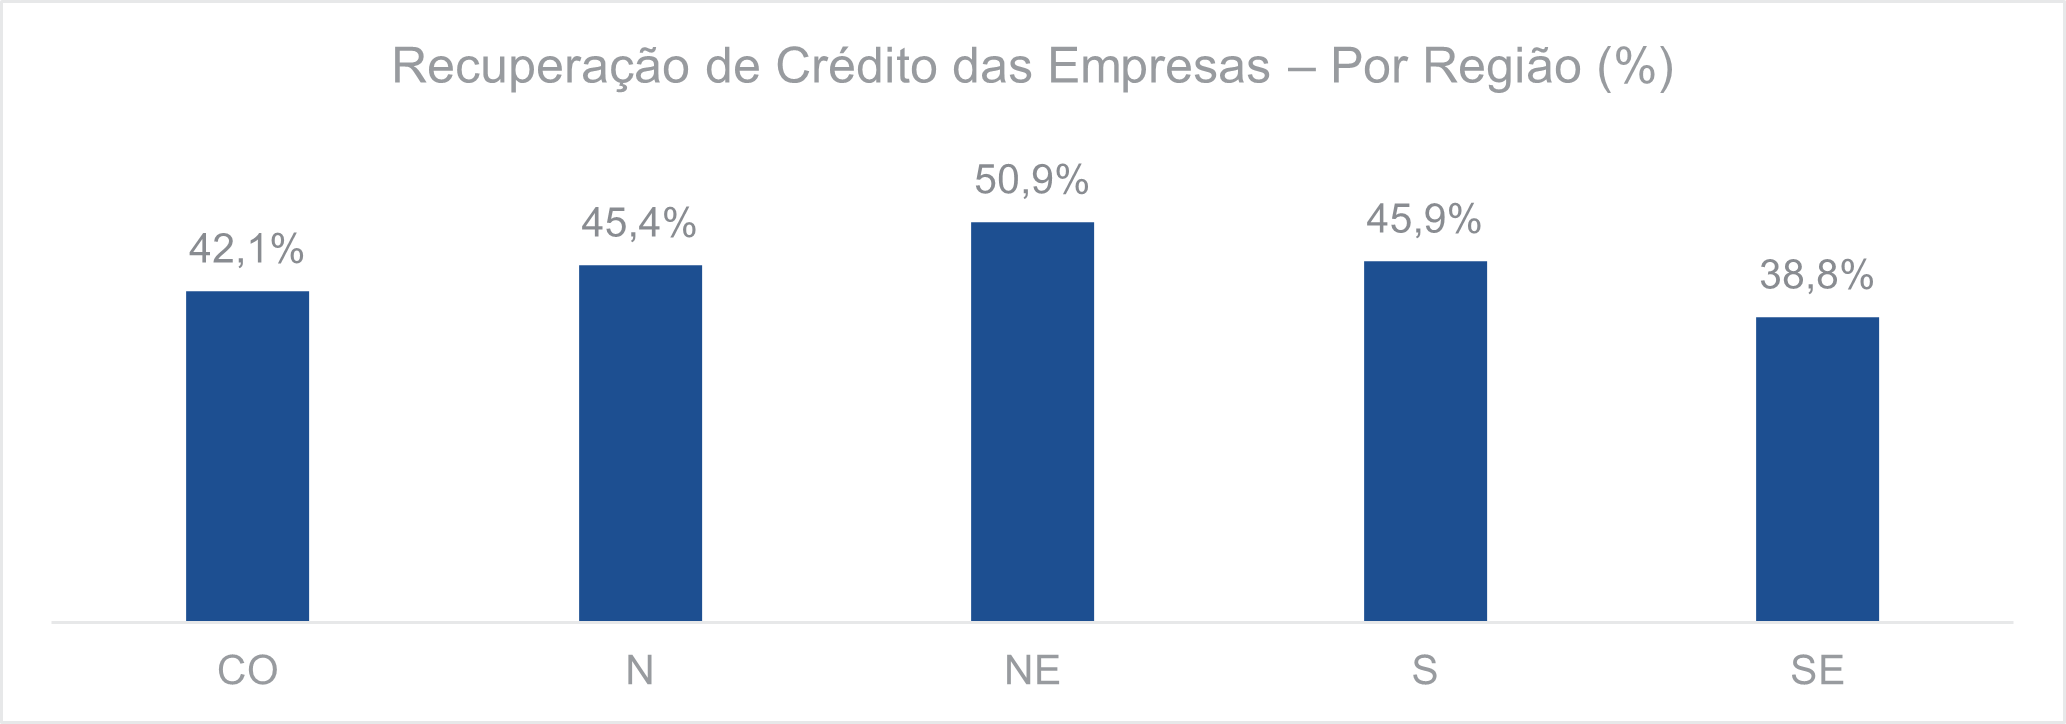 Recuperação de crédito das empresas por região